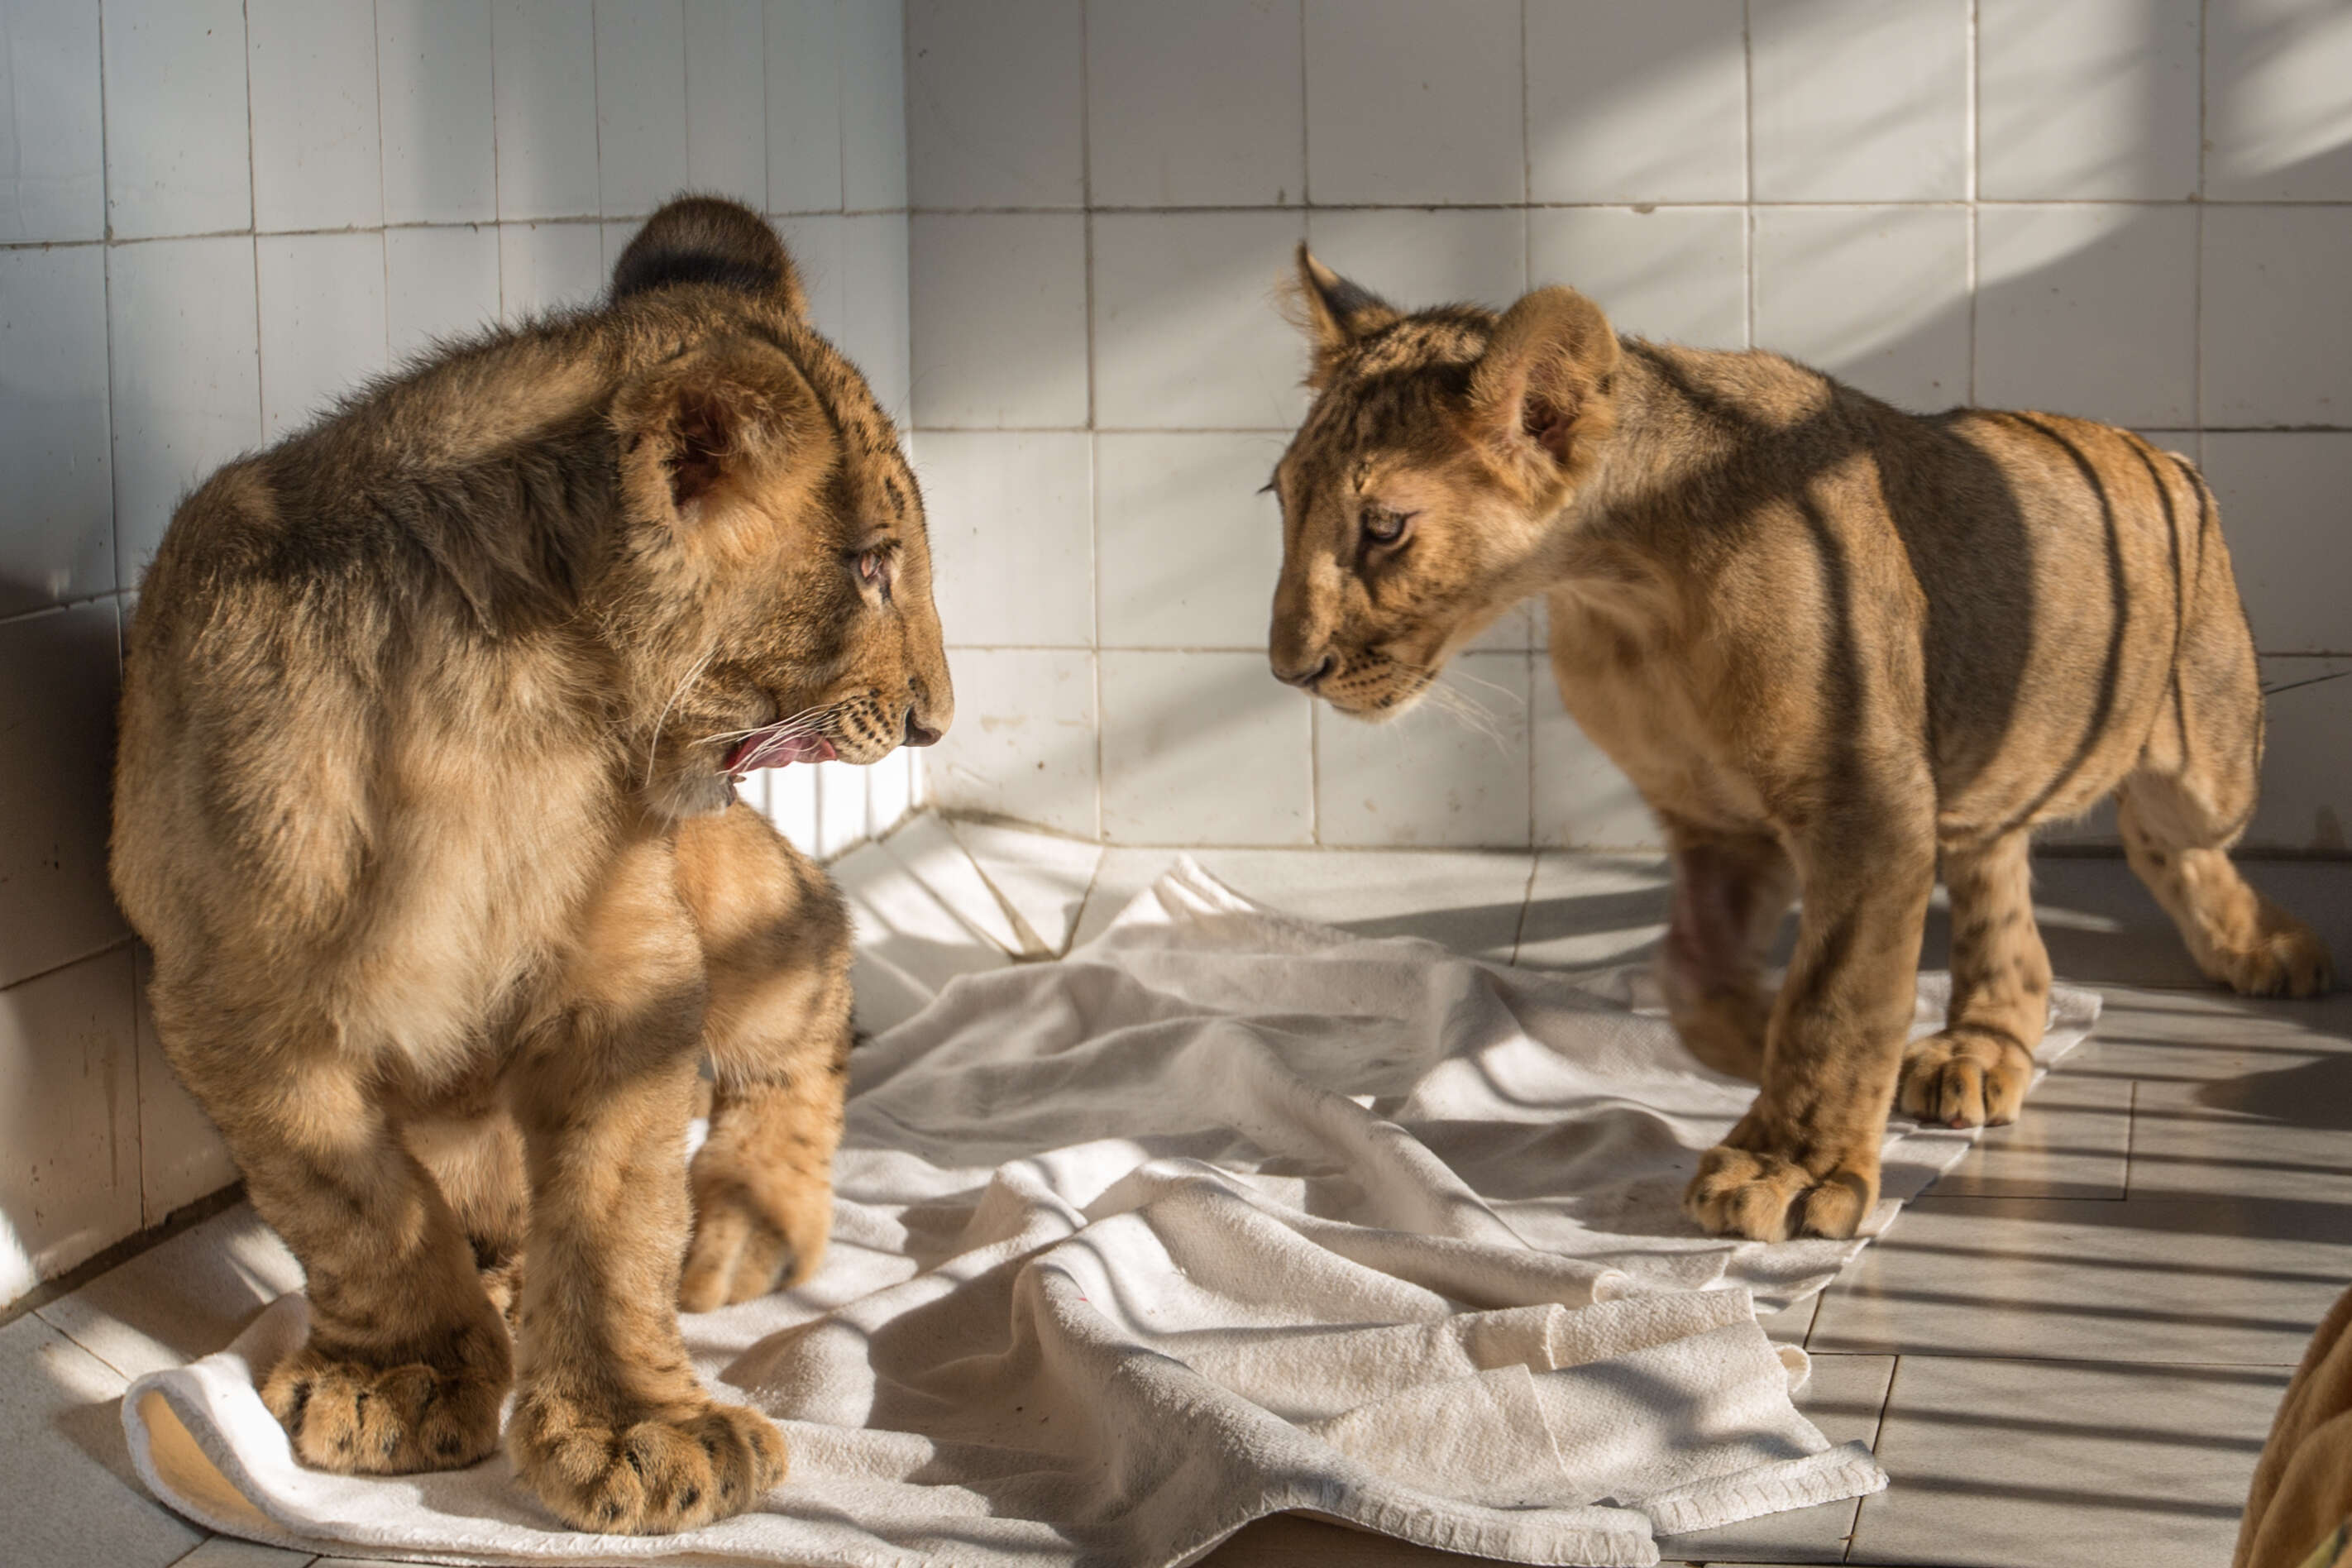 Rescued lion cubs